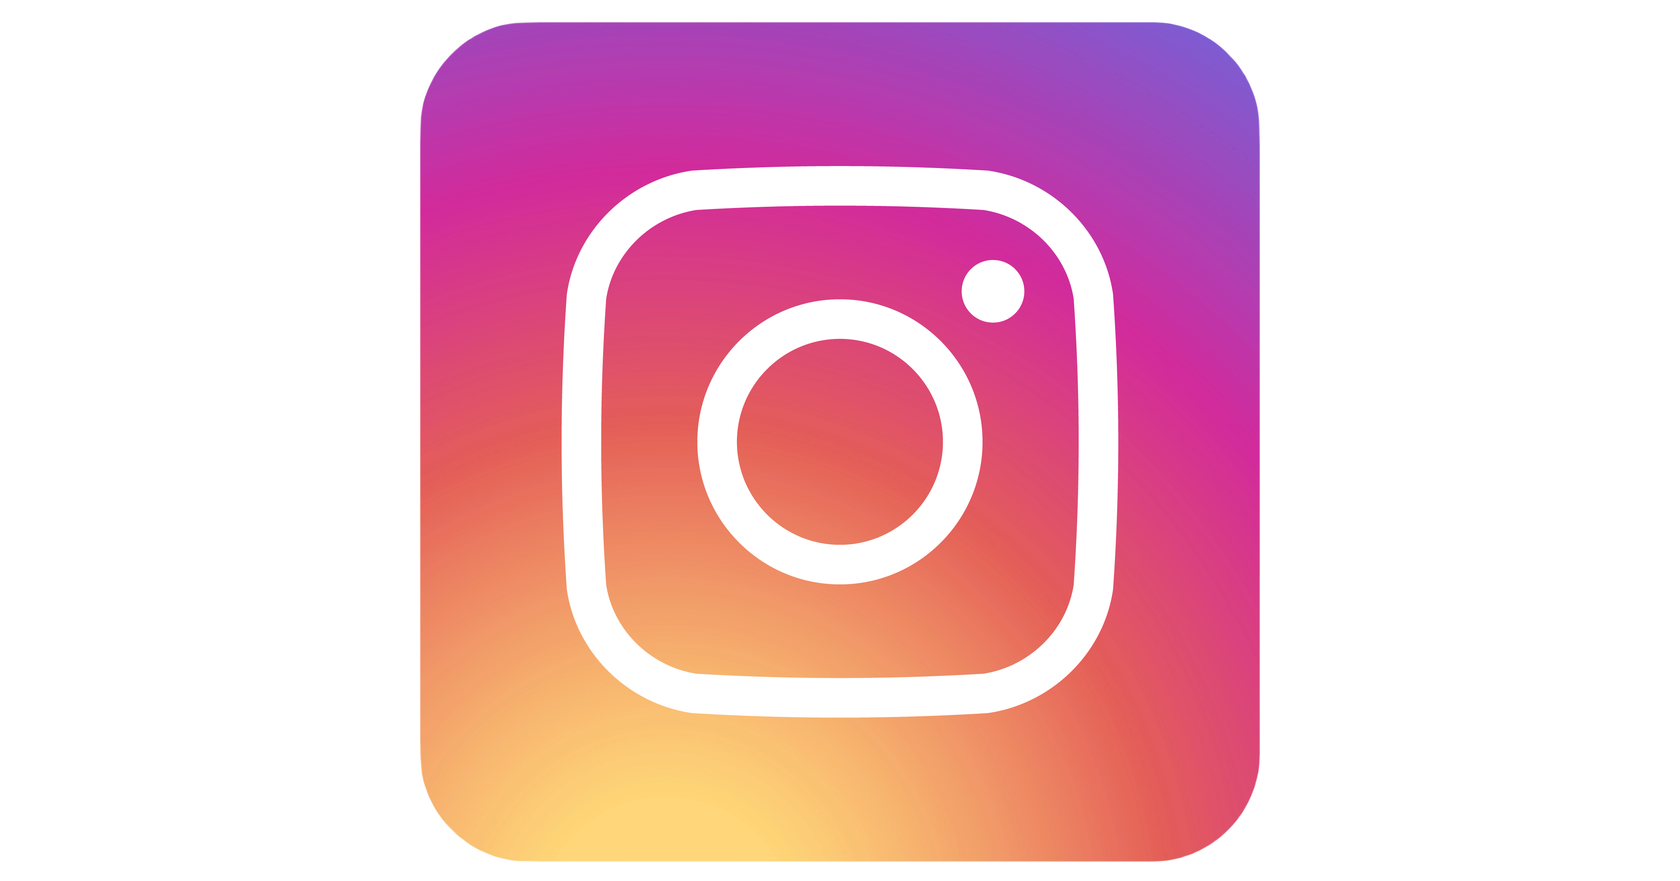 Прозрачный фон в инстаграм. Логотип Instagram. Значок Инстаграм. Прозрачный значок Инстаграм. Инст логотип на прозрачном фоне.